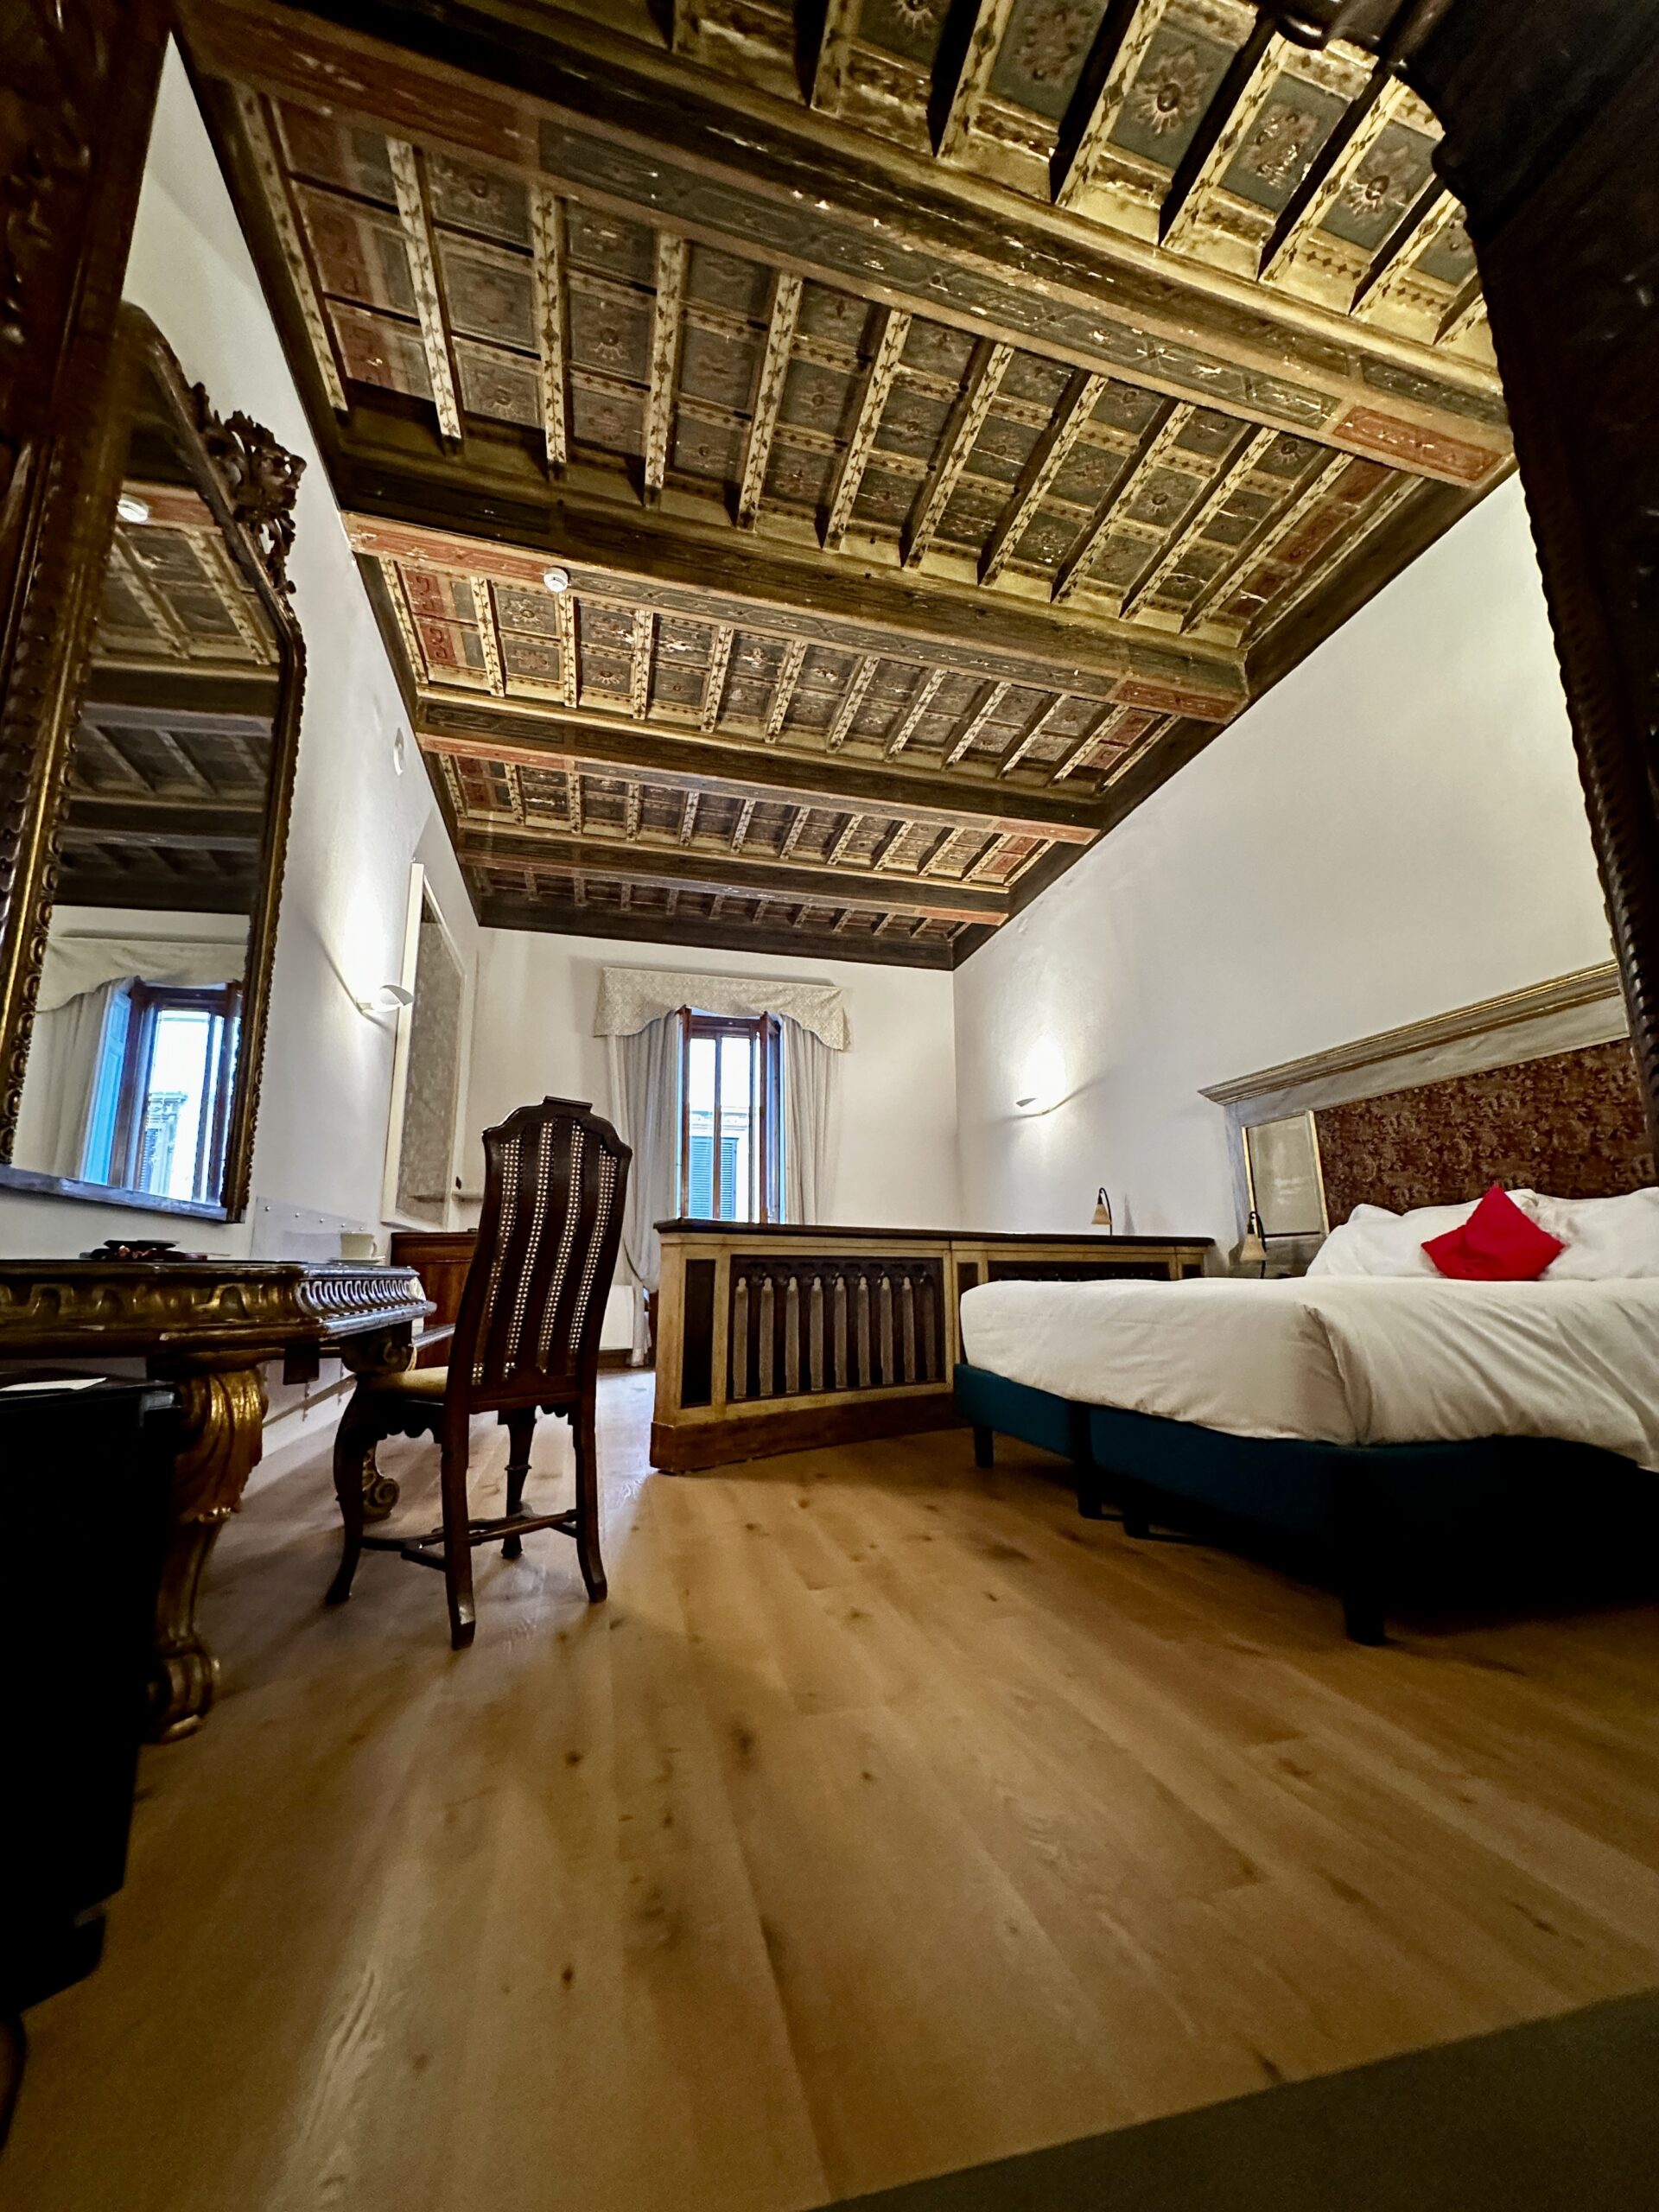 Mój pokój - niespodzianka od hotelu. Nigdy nie spałem pod tak wspaniałym sufitem. W Il Guelfo Bianco zatrzymałem się po raz kolejny i na pewno tam wrócę.